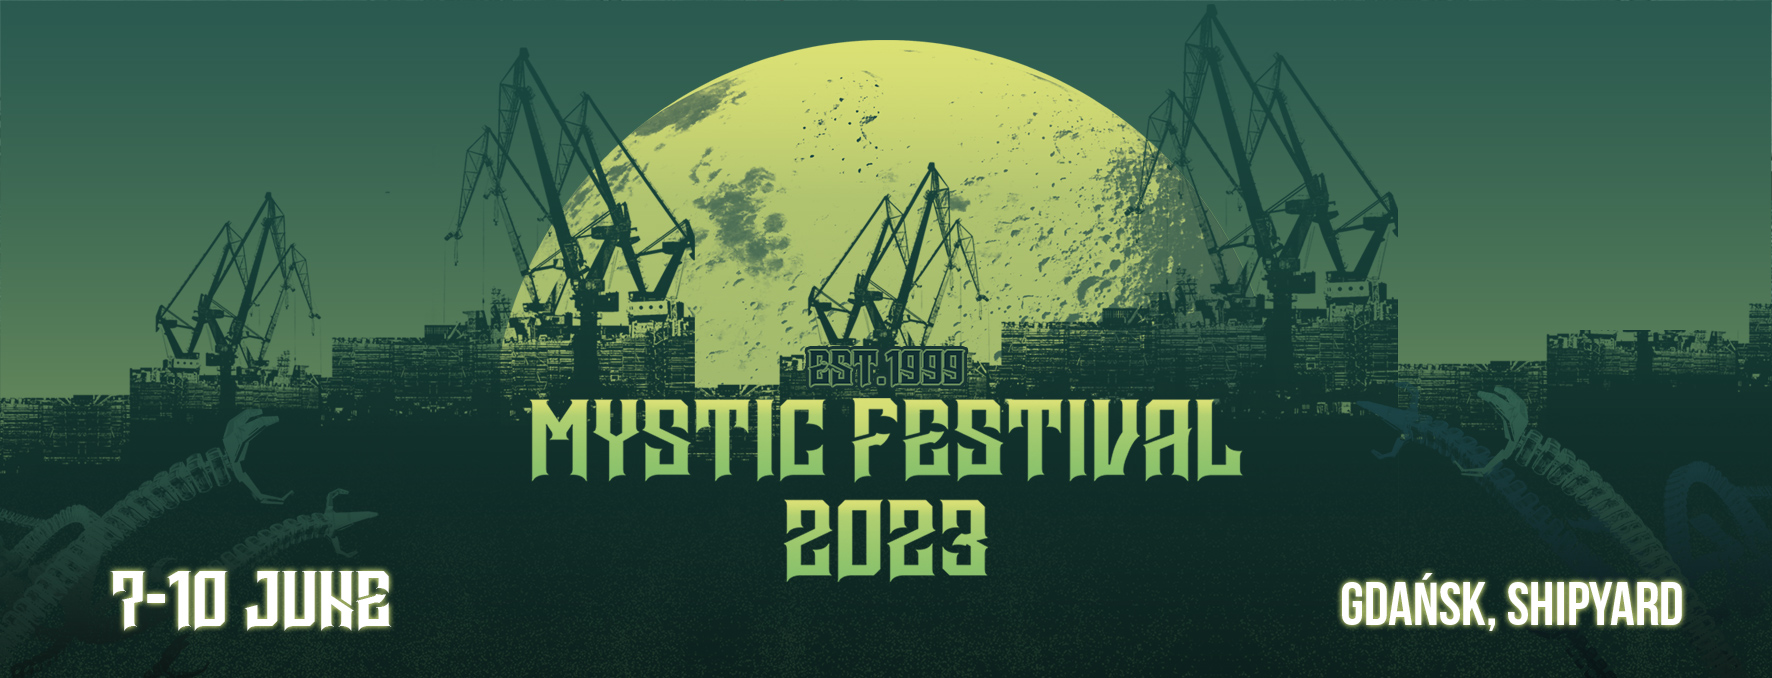 Pierwsi artyści Mystic Festival